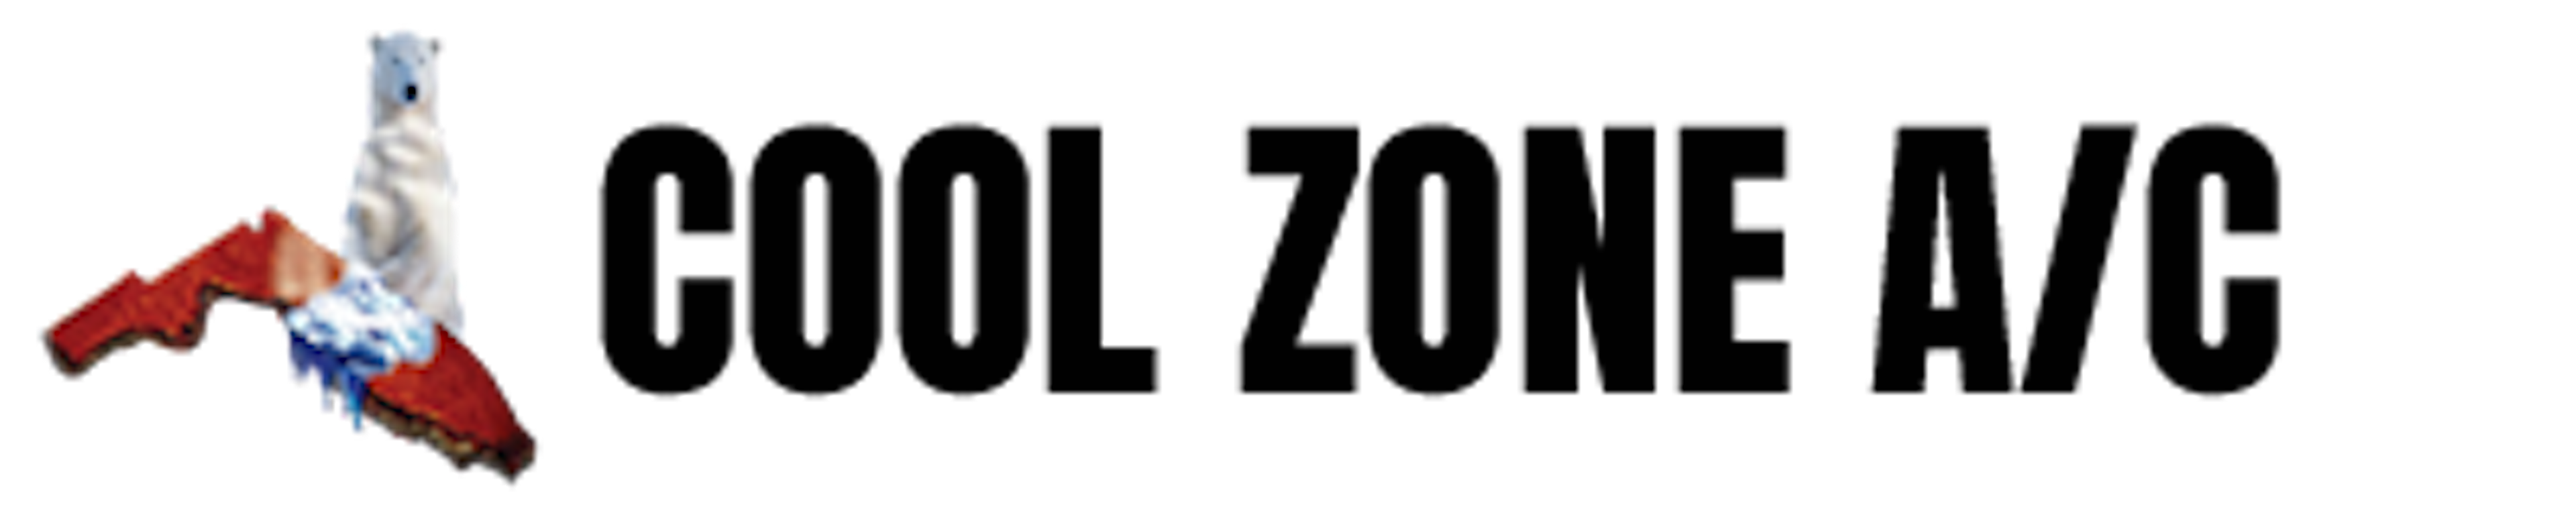 undefined brand logo